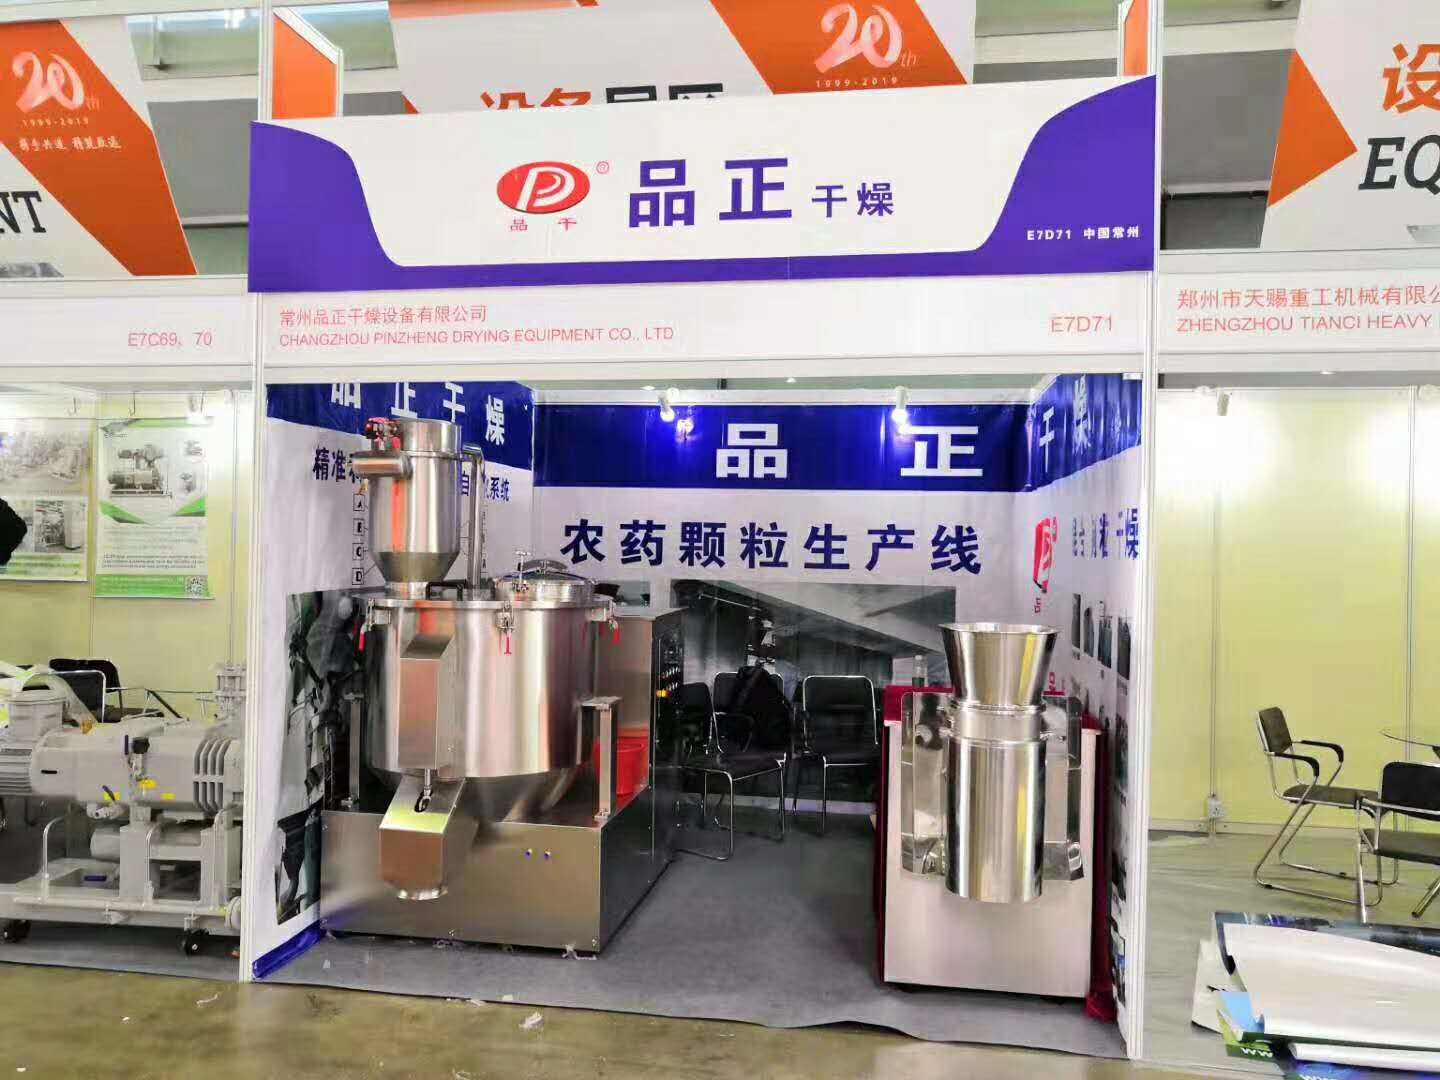 2019年第二十届中国国际农用化学品及植保展览会（CAC)在上海新国际博览中心N7D71常州品正干燥设备有限公司欢迎您